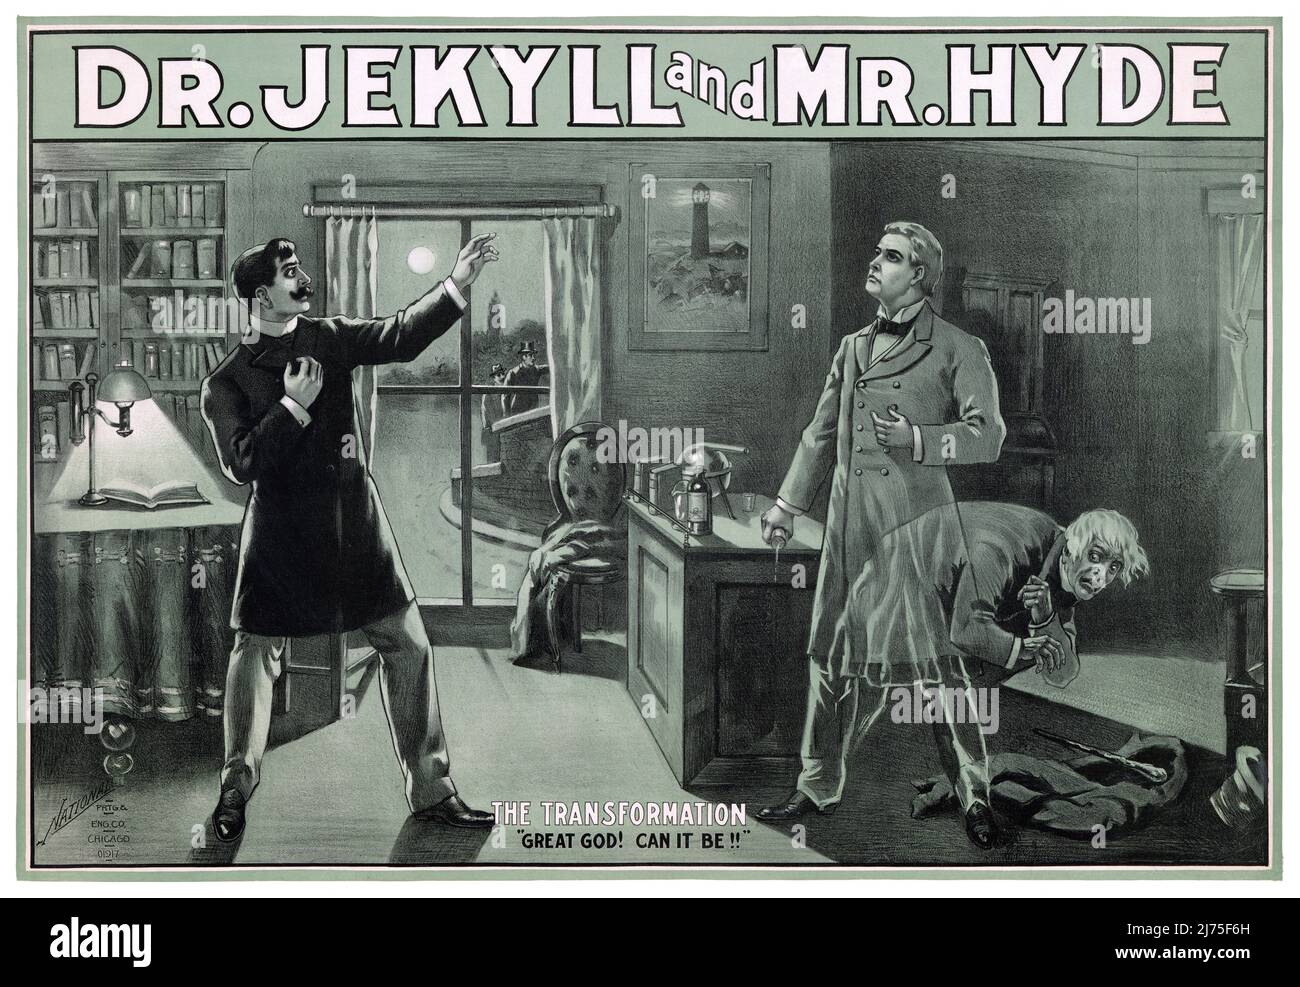 Dr. Jekyll and Mr. Hyde von Robert Louis Stevenson (1850-1894). Plakat, das 1880 in den USA veröffentlicht wurde. Stockfoto